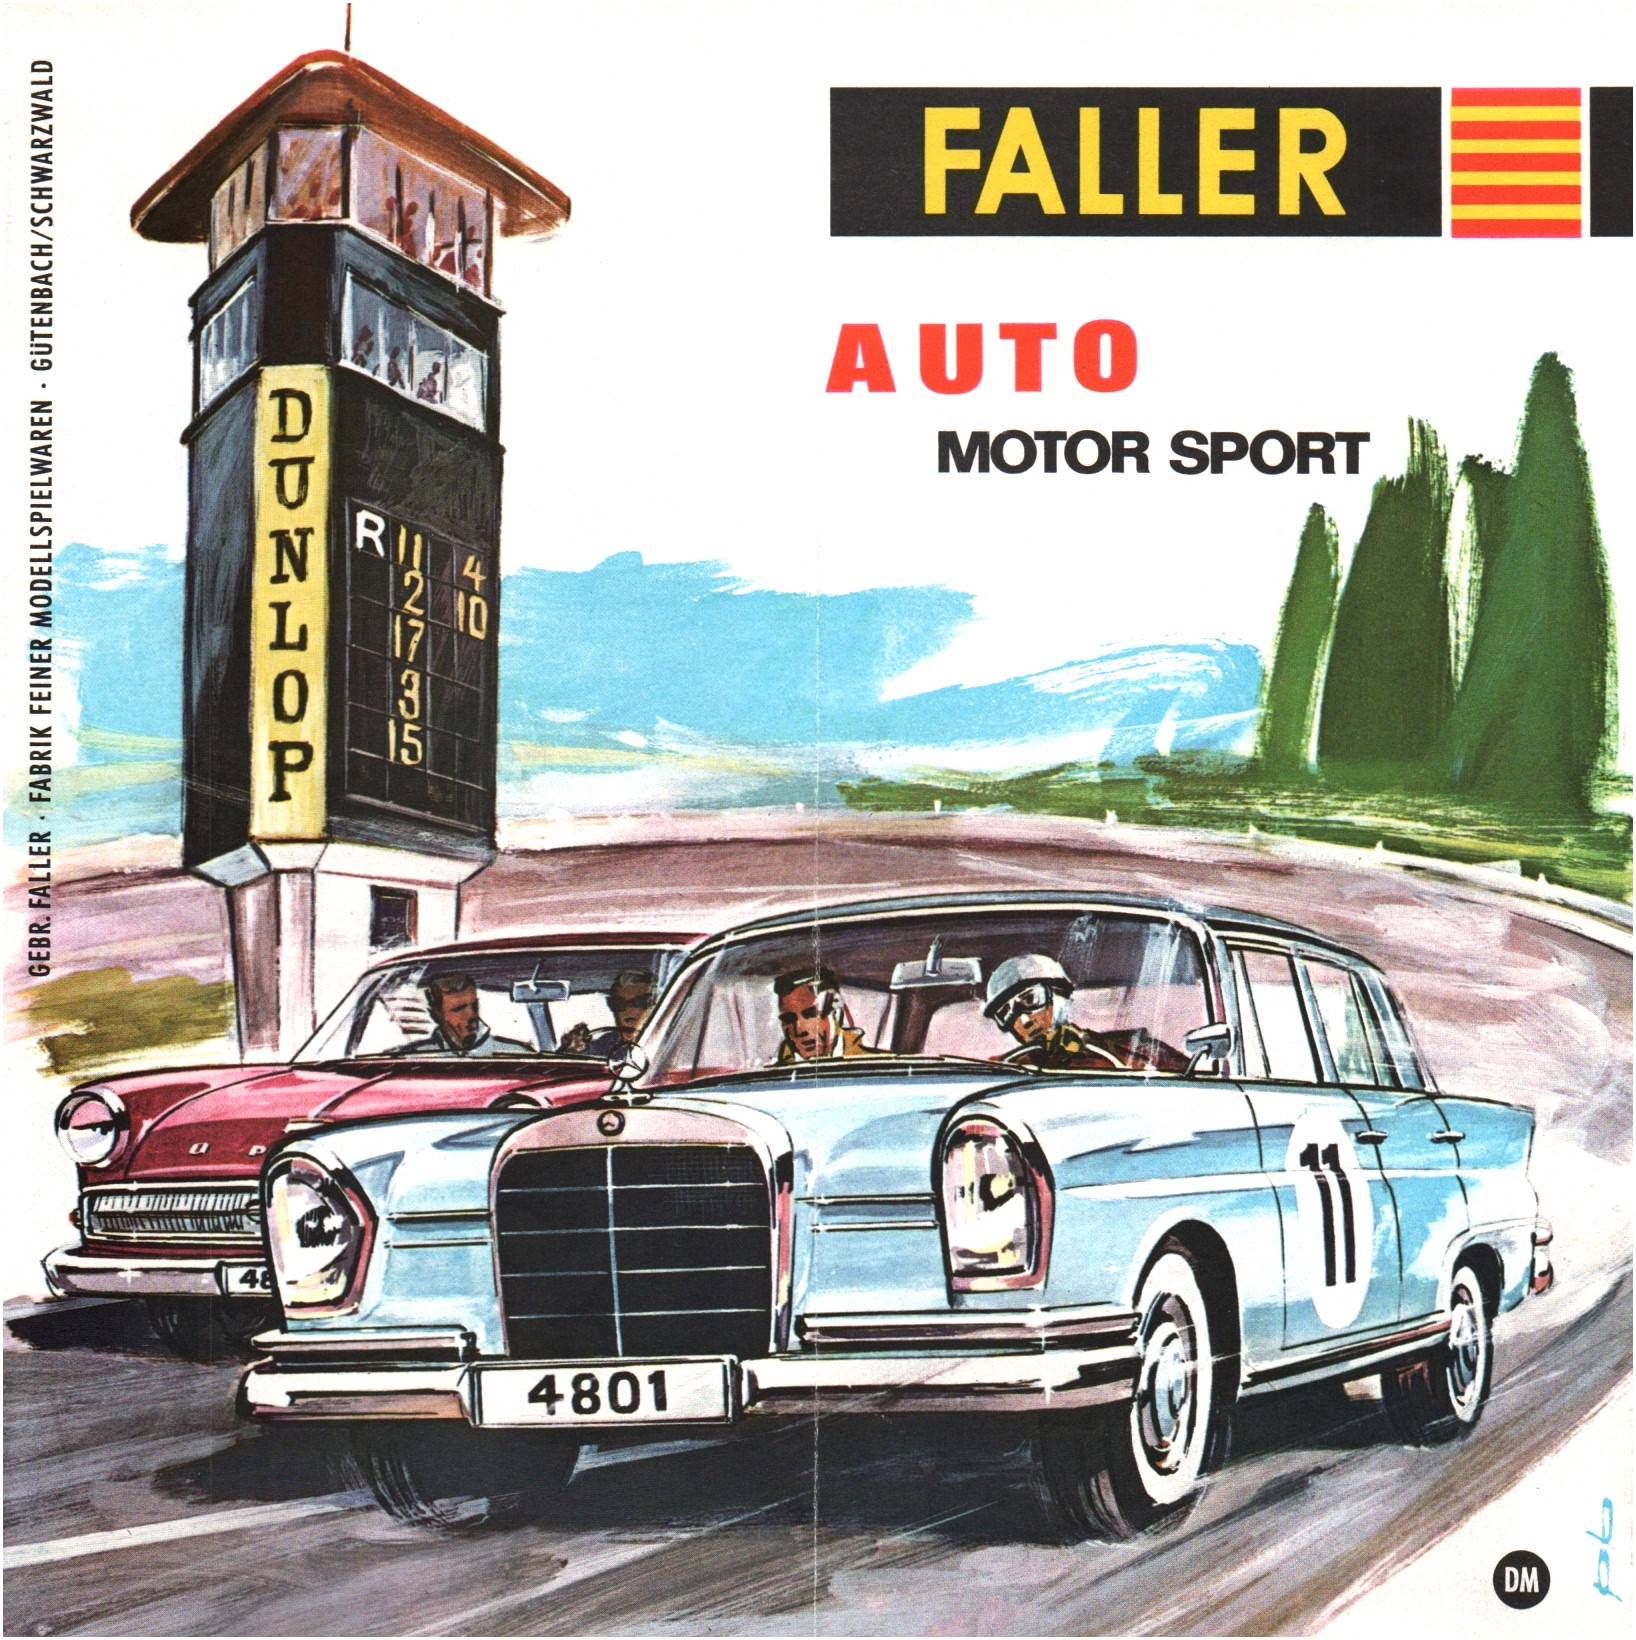 Faller Auto Motor Sport Prospekt 1960er Sammler